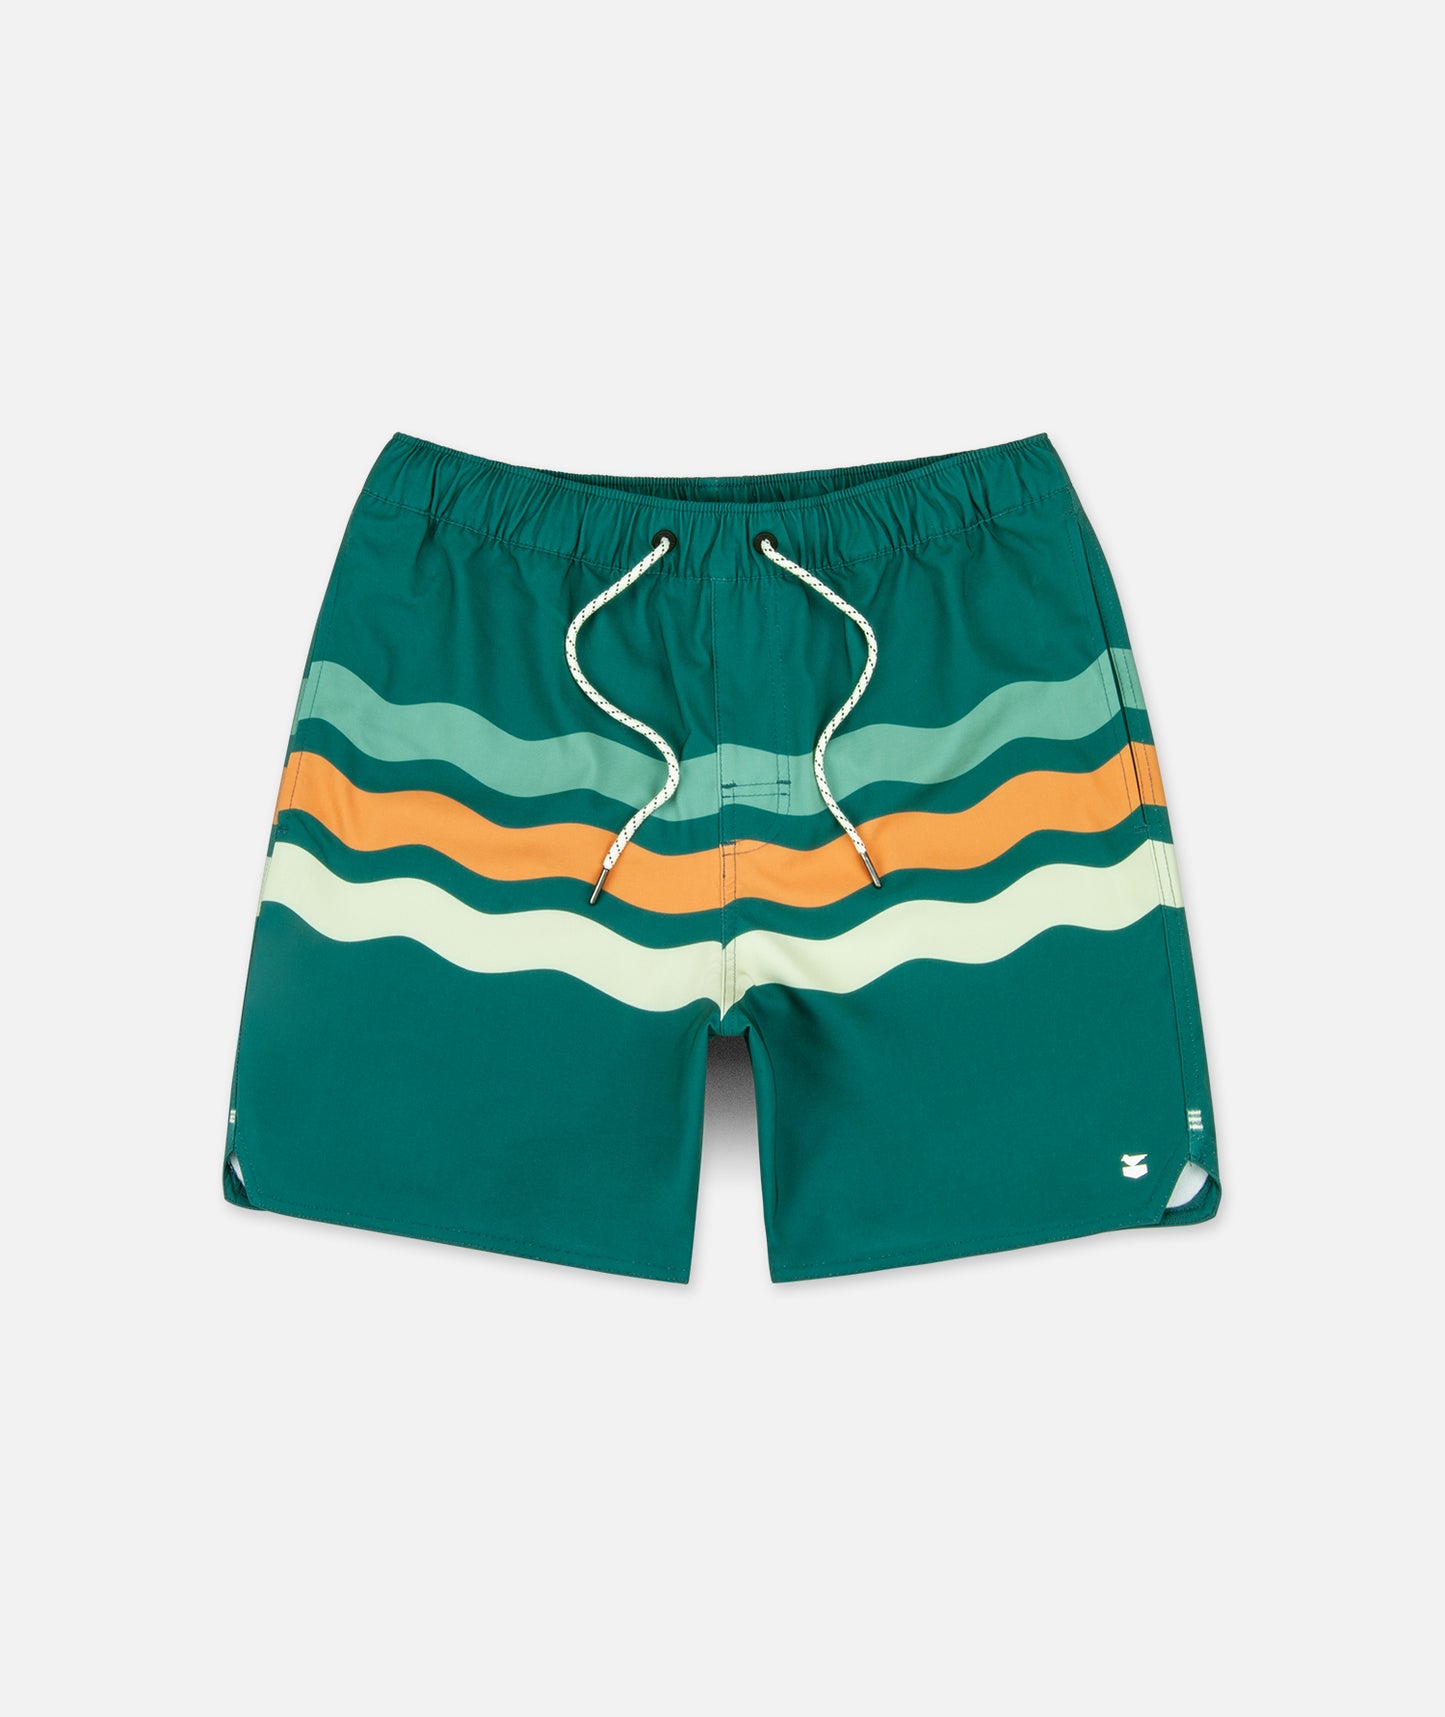 Pantalón corto para piscina Bayside - Verde azulado